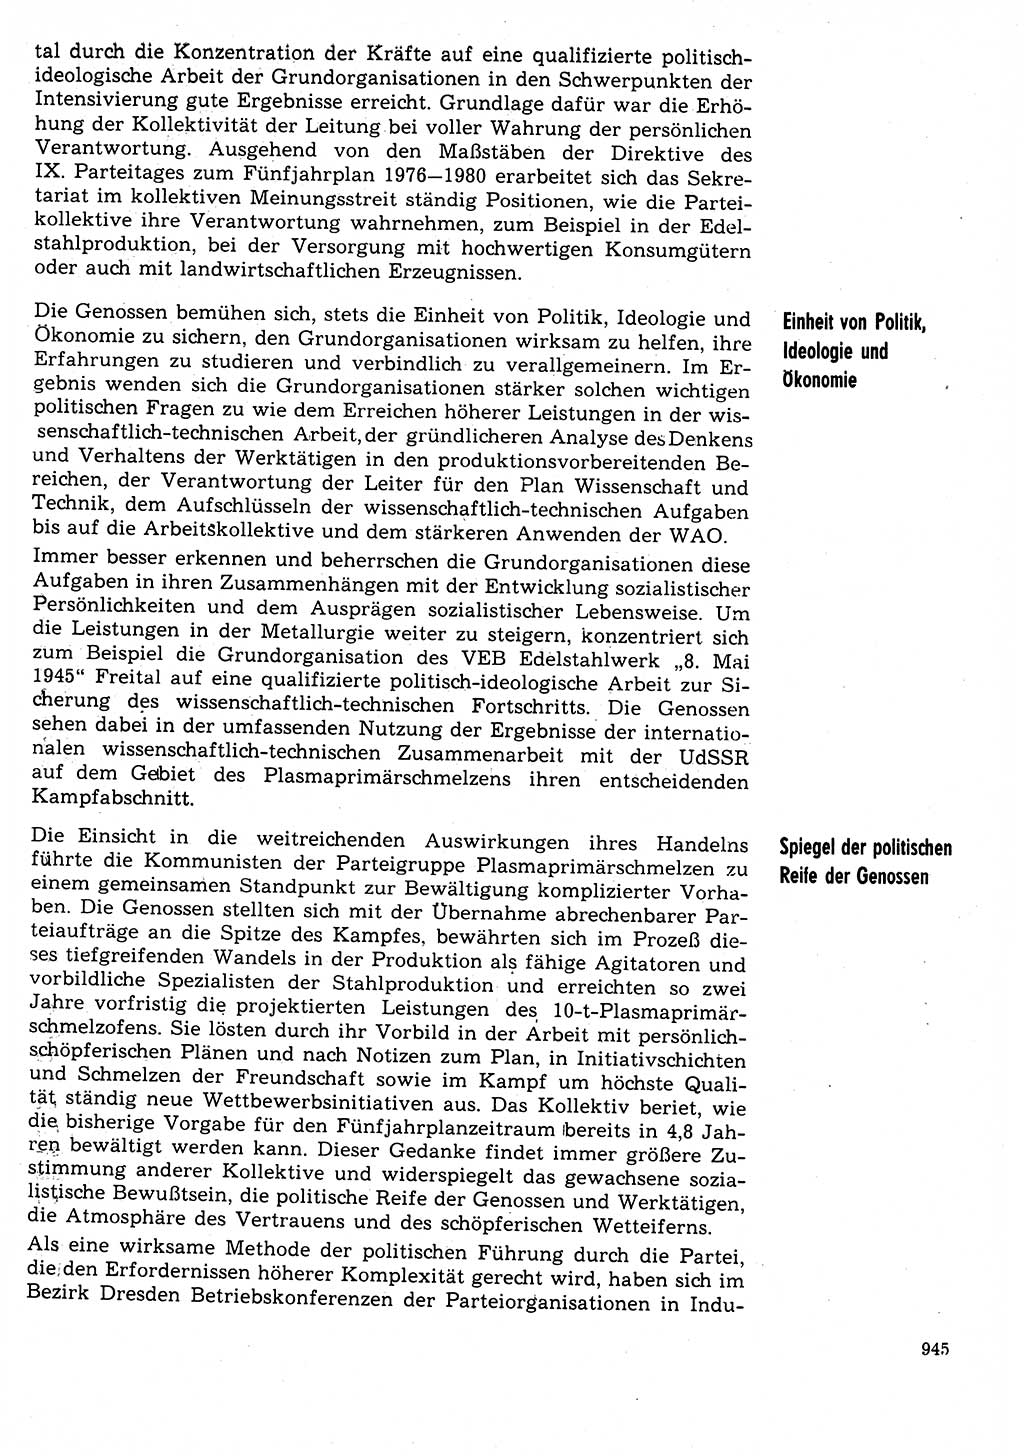 Neuer Weg (NW), Organ des Zentralkomitees (ZK) der SED (Sozialistische Einheitspartei Deutschlands) für Fragen des Parteilebens, 31. Jahrgang [Deutsche Demokratische Republik (DDR)] 1976, Seite 945 (NW ZK SED DDR 1976, S. 945)